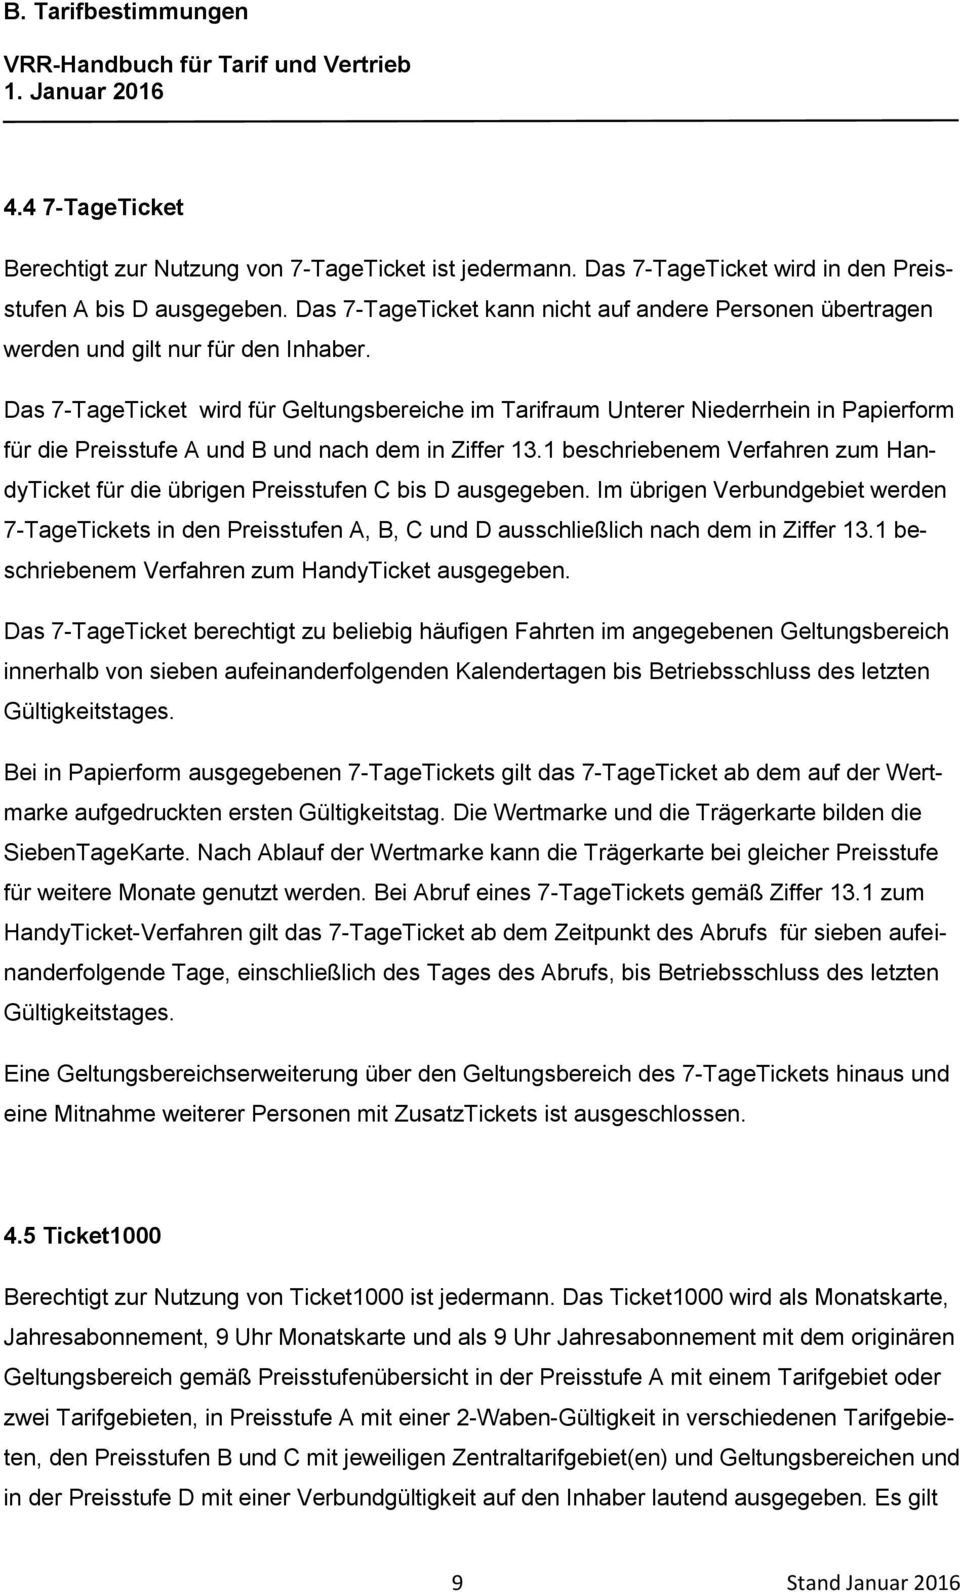 Das 7-TageTicket wird für Geltungsbereiche im Tarifraum Unterer Niederrhein in Papierform für die Preisstufe A und B und nach dem in Ziffer 13.